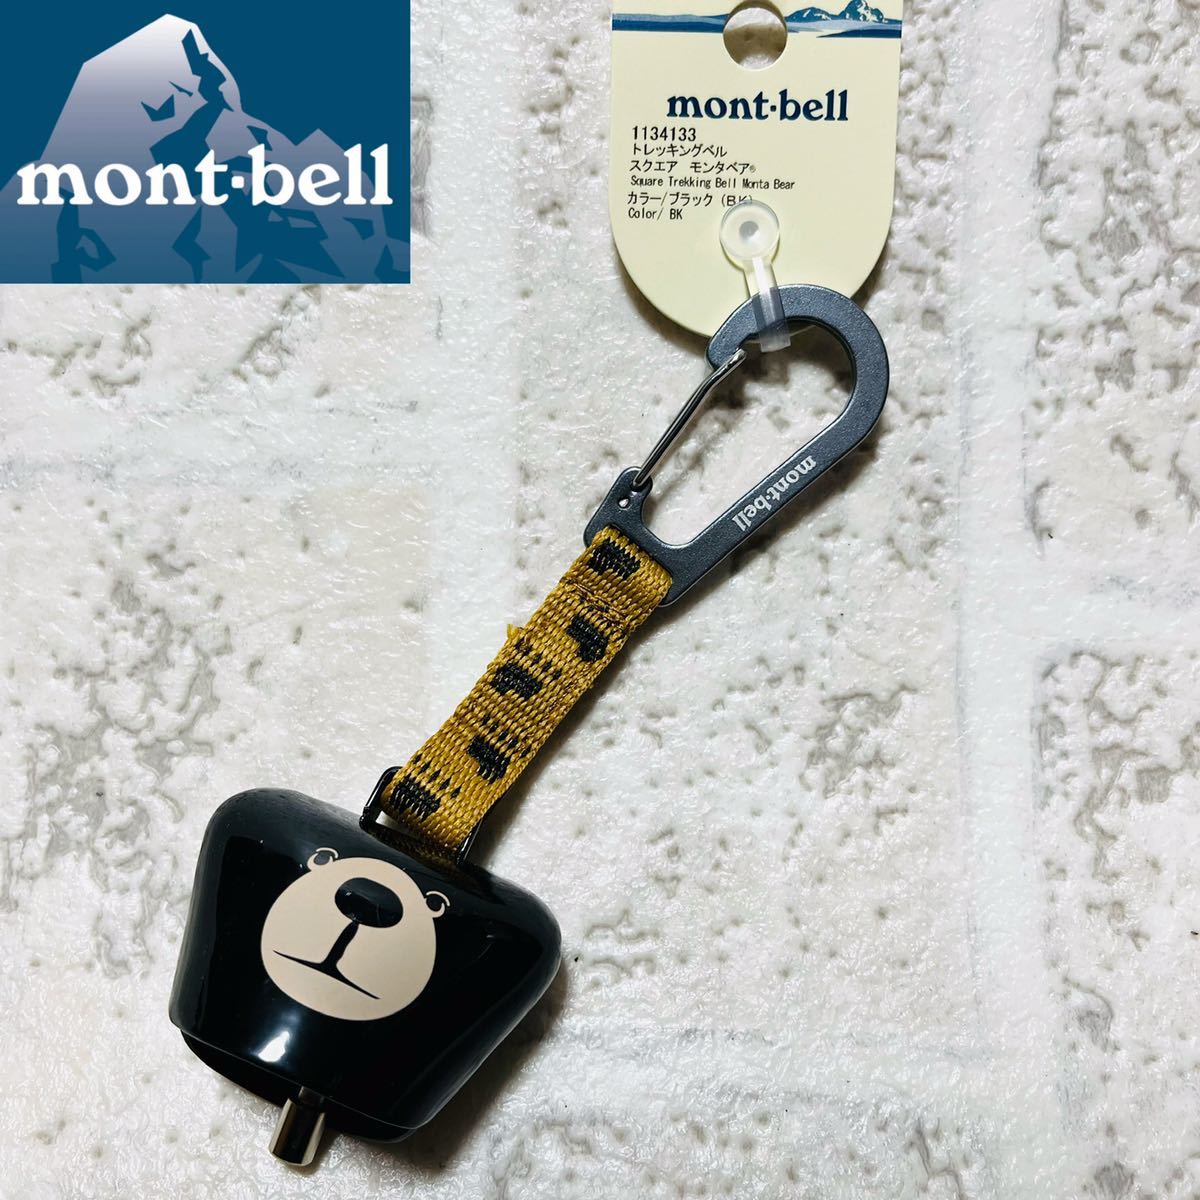 新品 mont-bell モンベル トレッキングベル スクエア モンタベア 熊鈴 すず 熊よけ アウトドア キャンプ 登山 かわいい ベアベル 8676_画像1